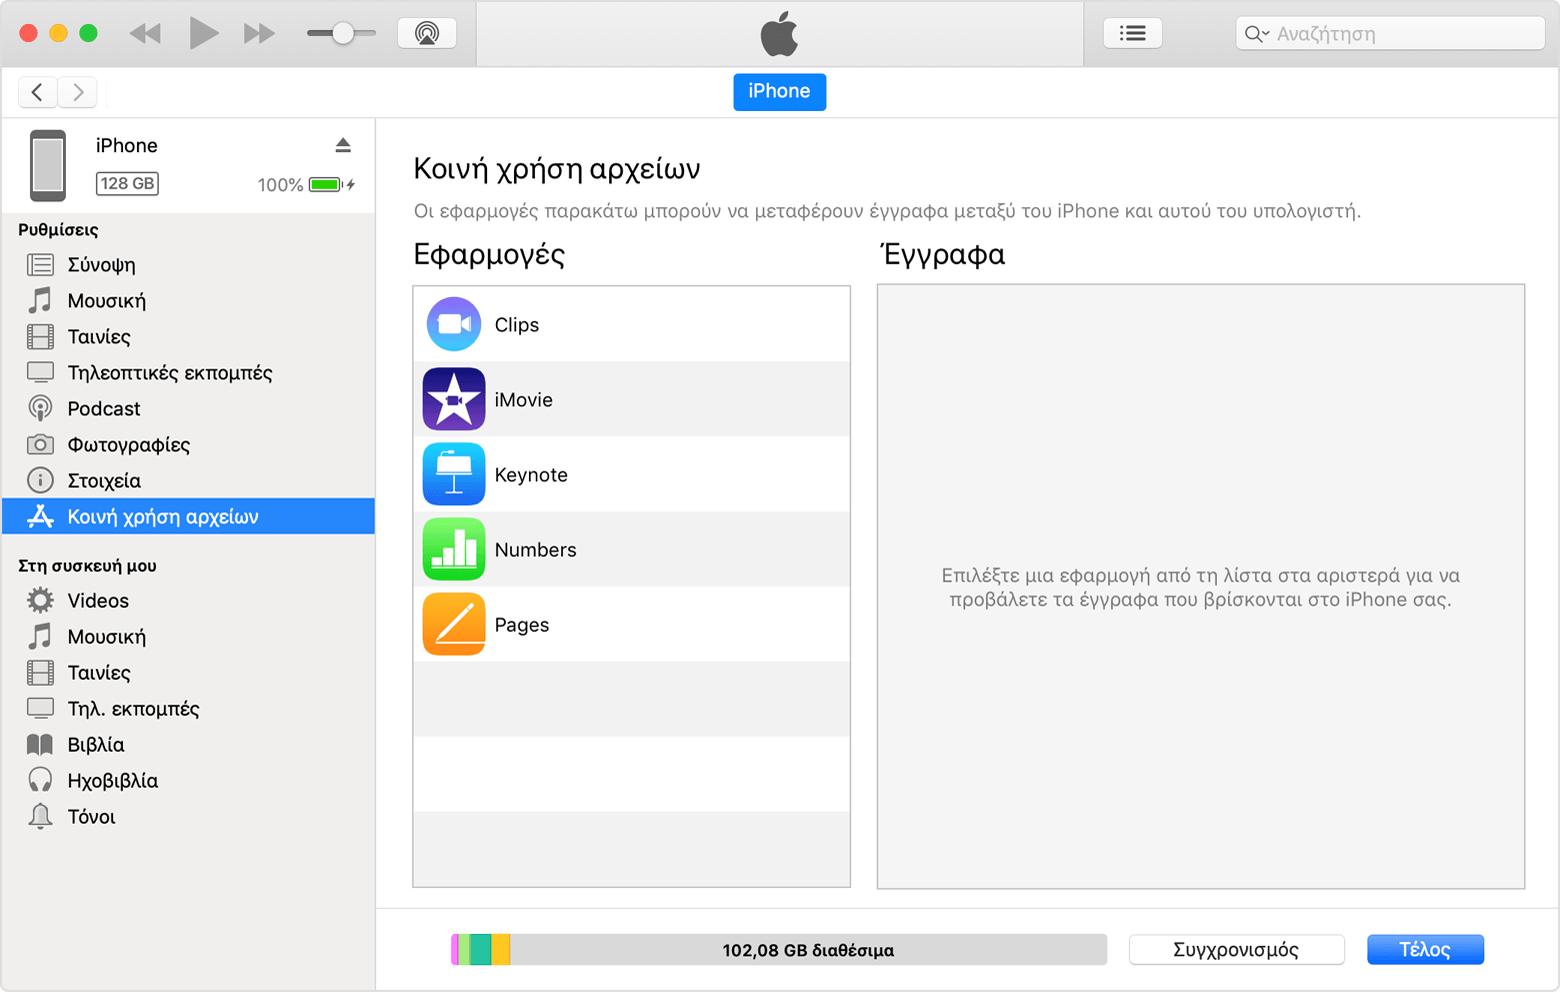 Παράθυρο iTunes με το iPhone συνδεδεμένο και την «Κοινή χρήση αρχείων» επιλεγμένη στη λίστα.